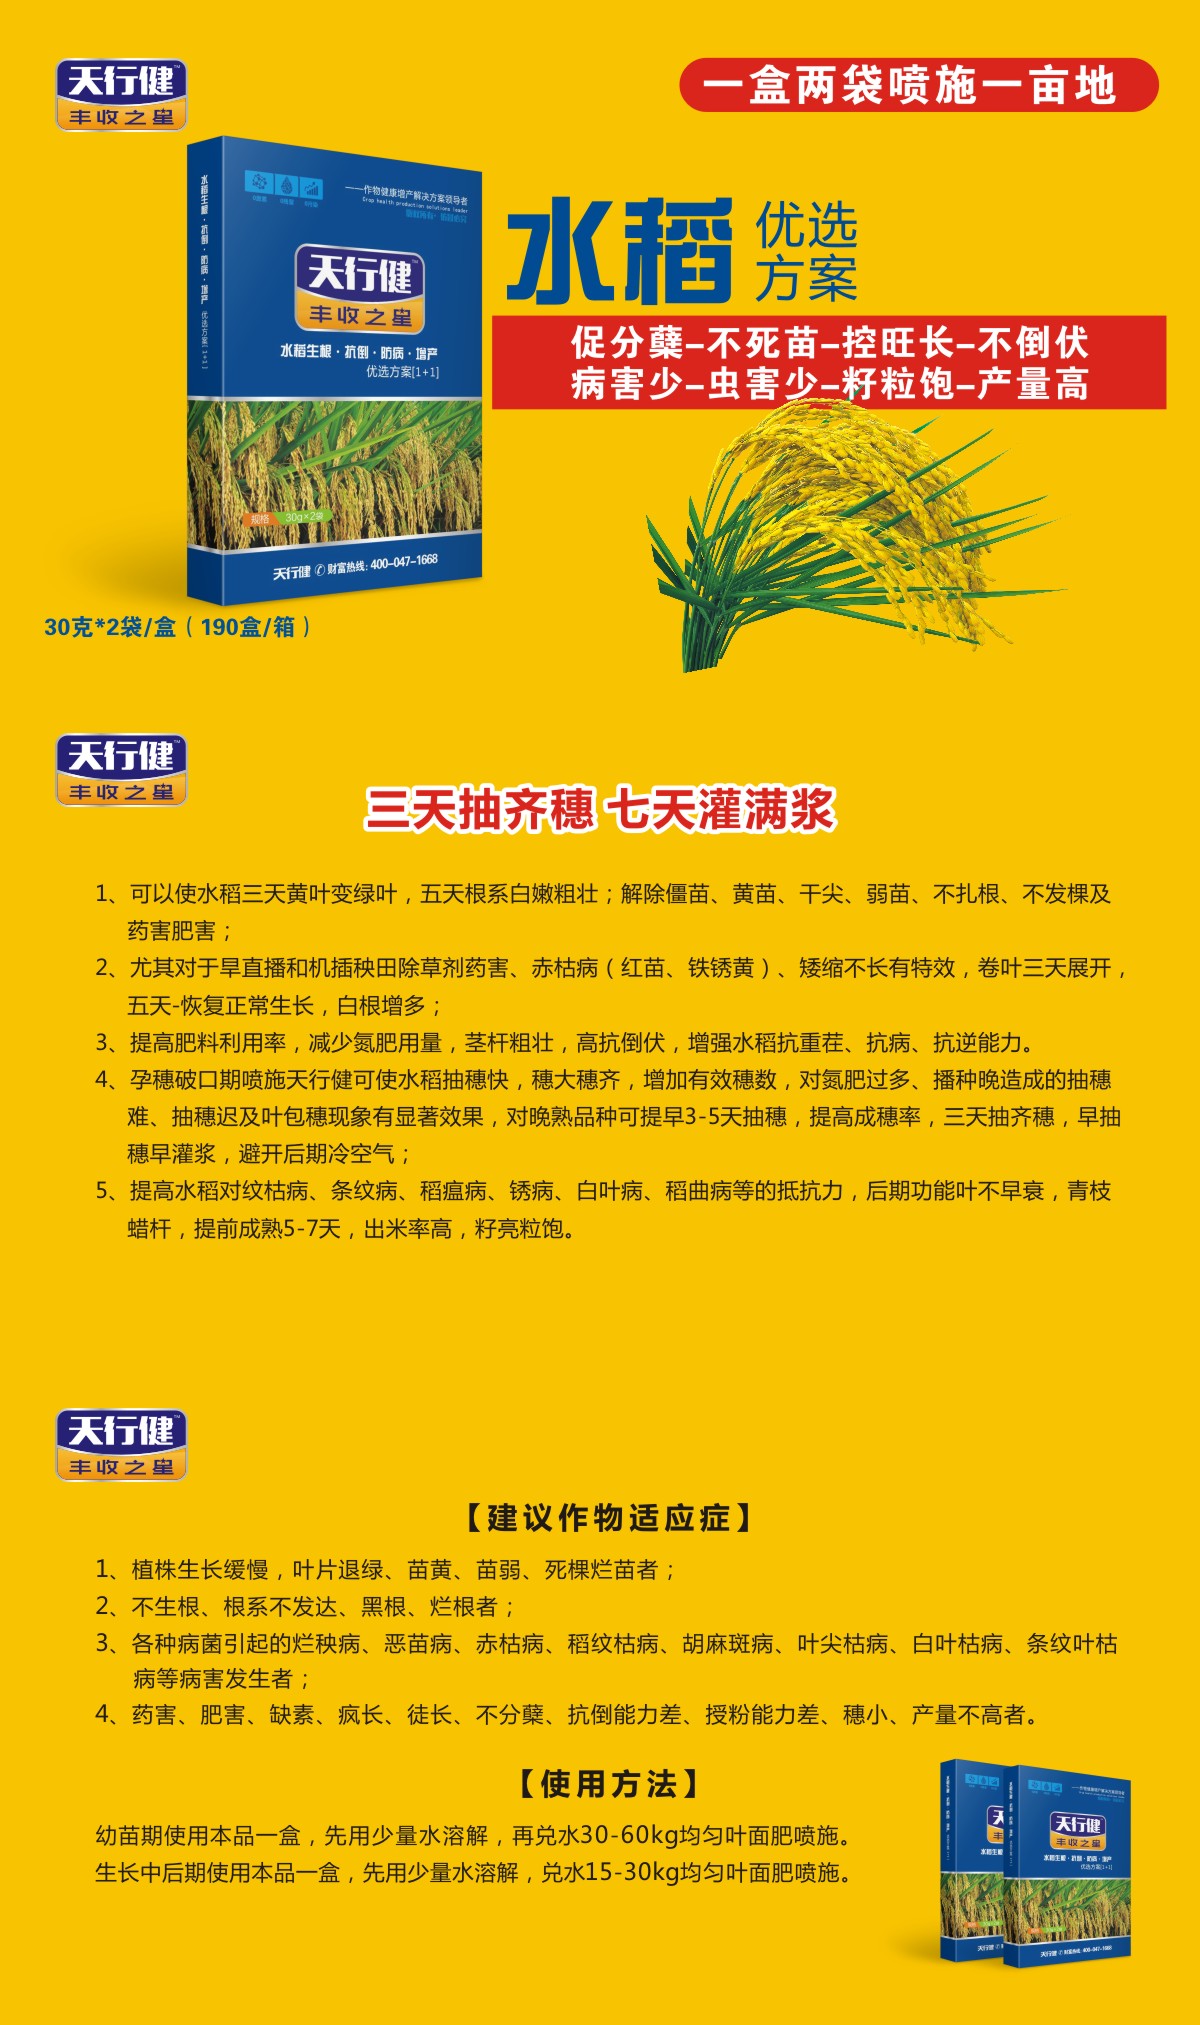 江西水稻增产套餐厂家 芸苔素生产厂家 河南芸苔素内酯性价比较高 水稻叶面肥价格 水稻叶面肥价格